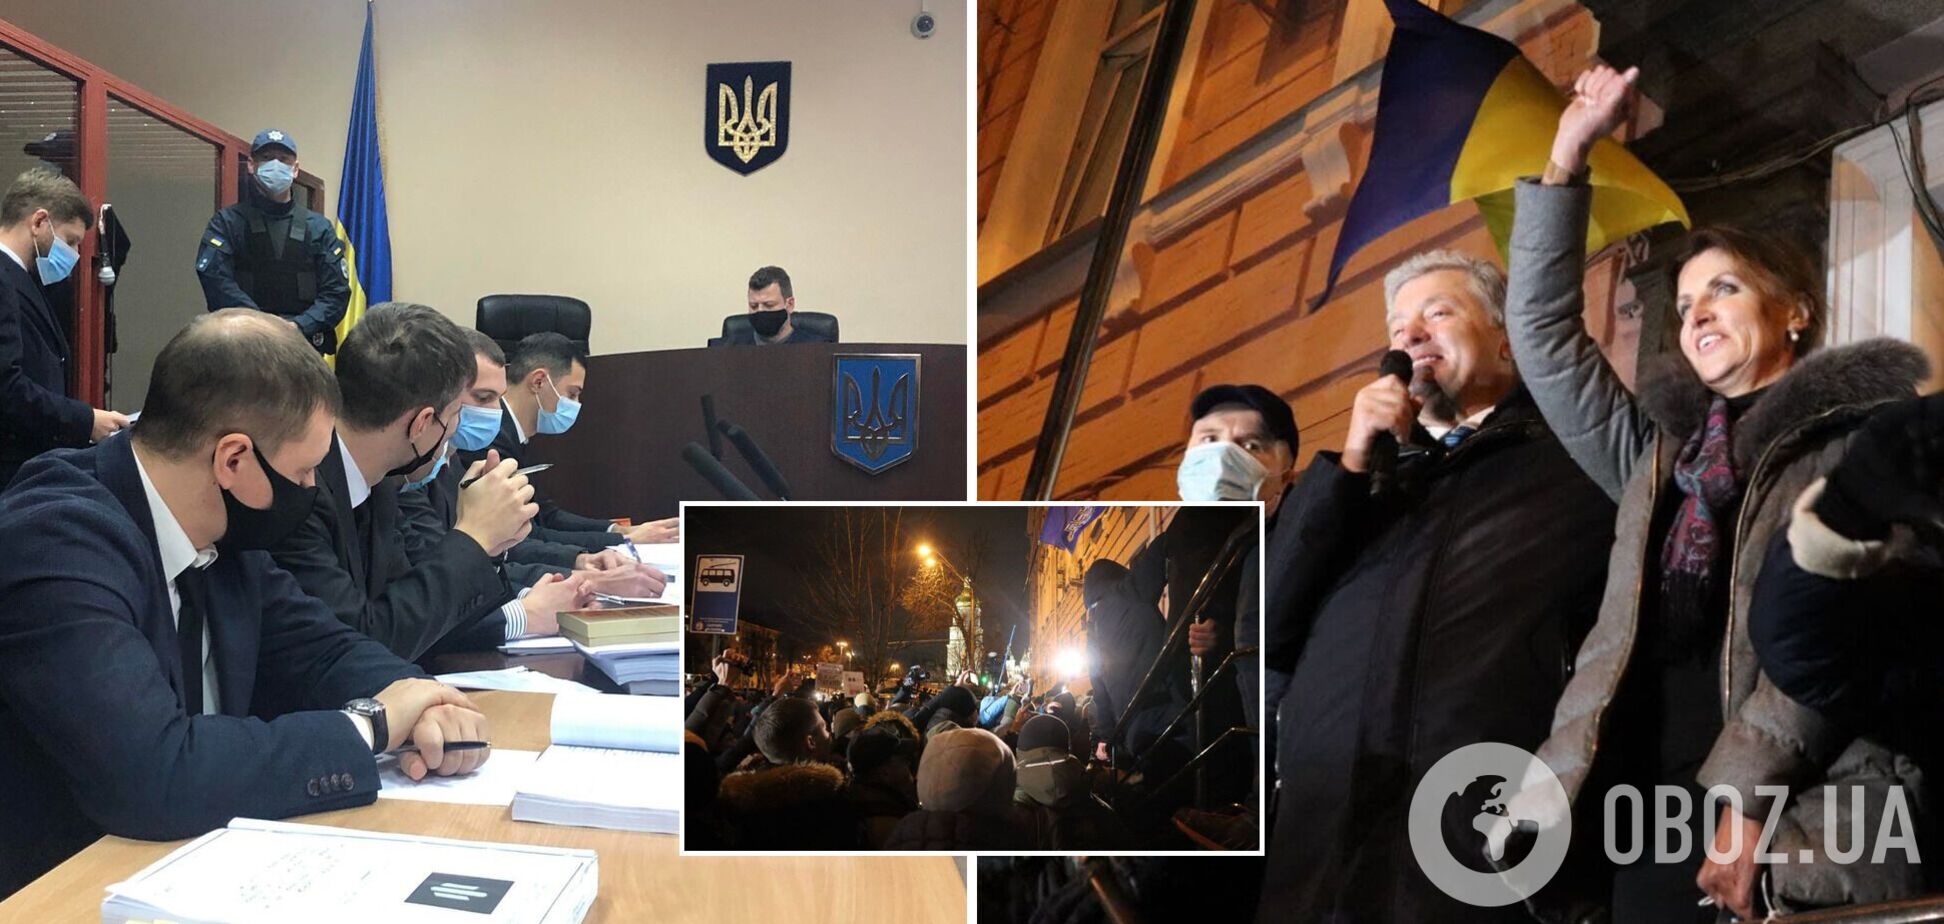 Порошенко повернувся в Україну, суд за 11 годин так і не обрав йому запобіжний захід. Фото, відео та всі подробиці